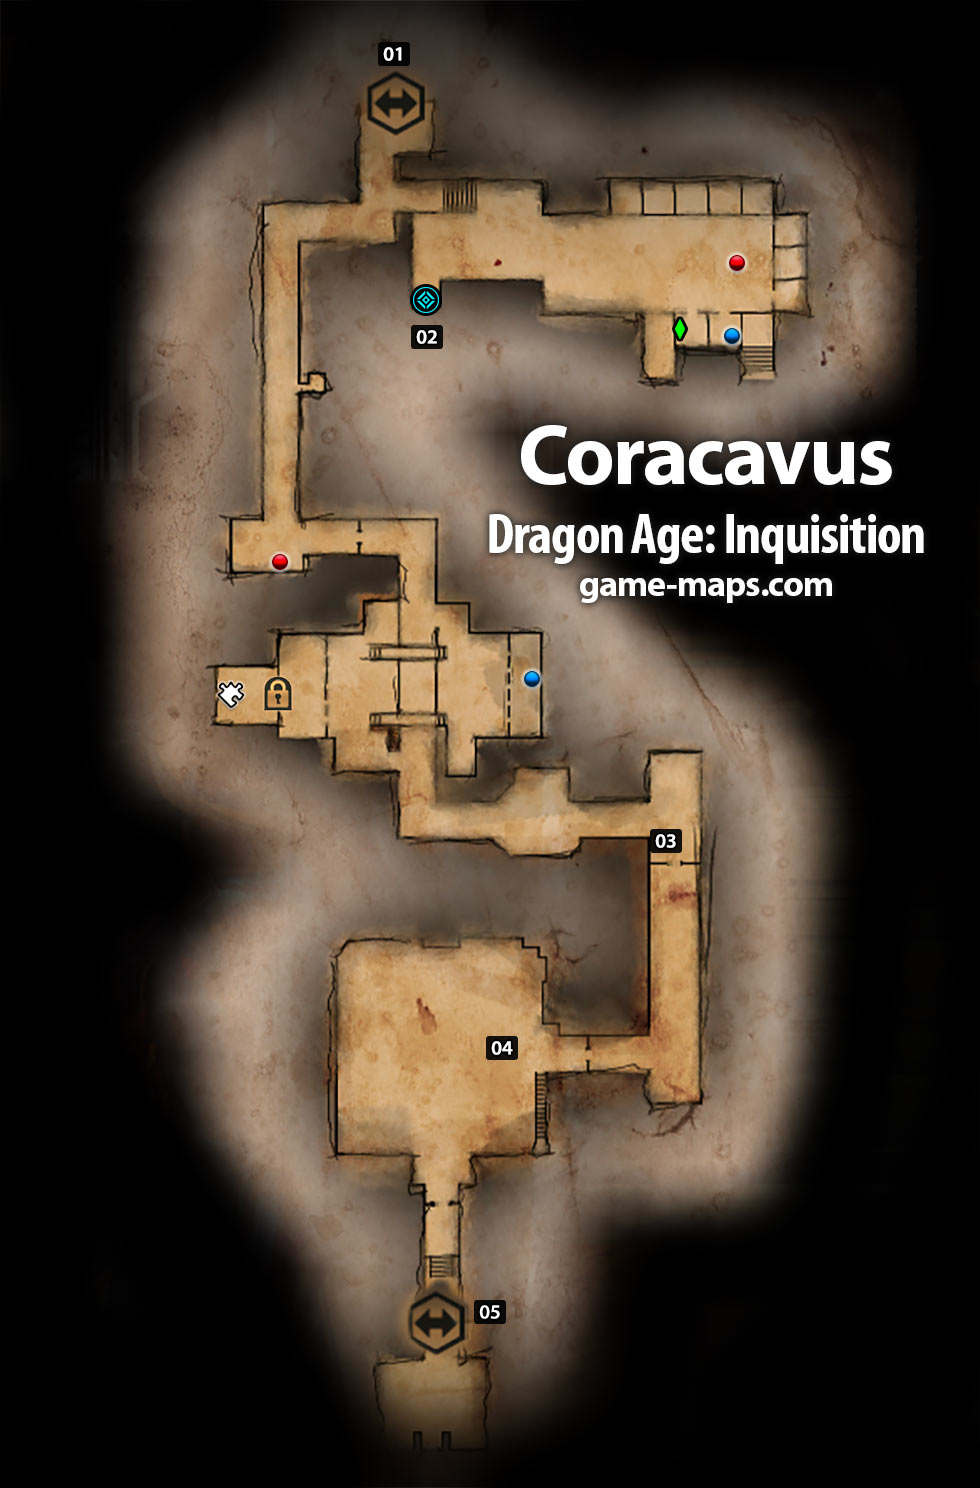 Coracavus Dragon Age: Inquisition